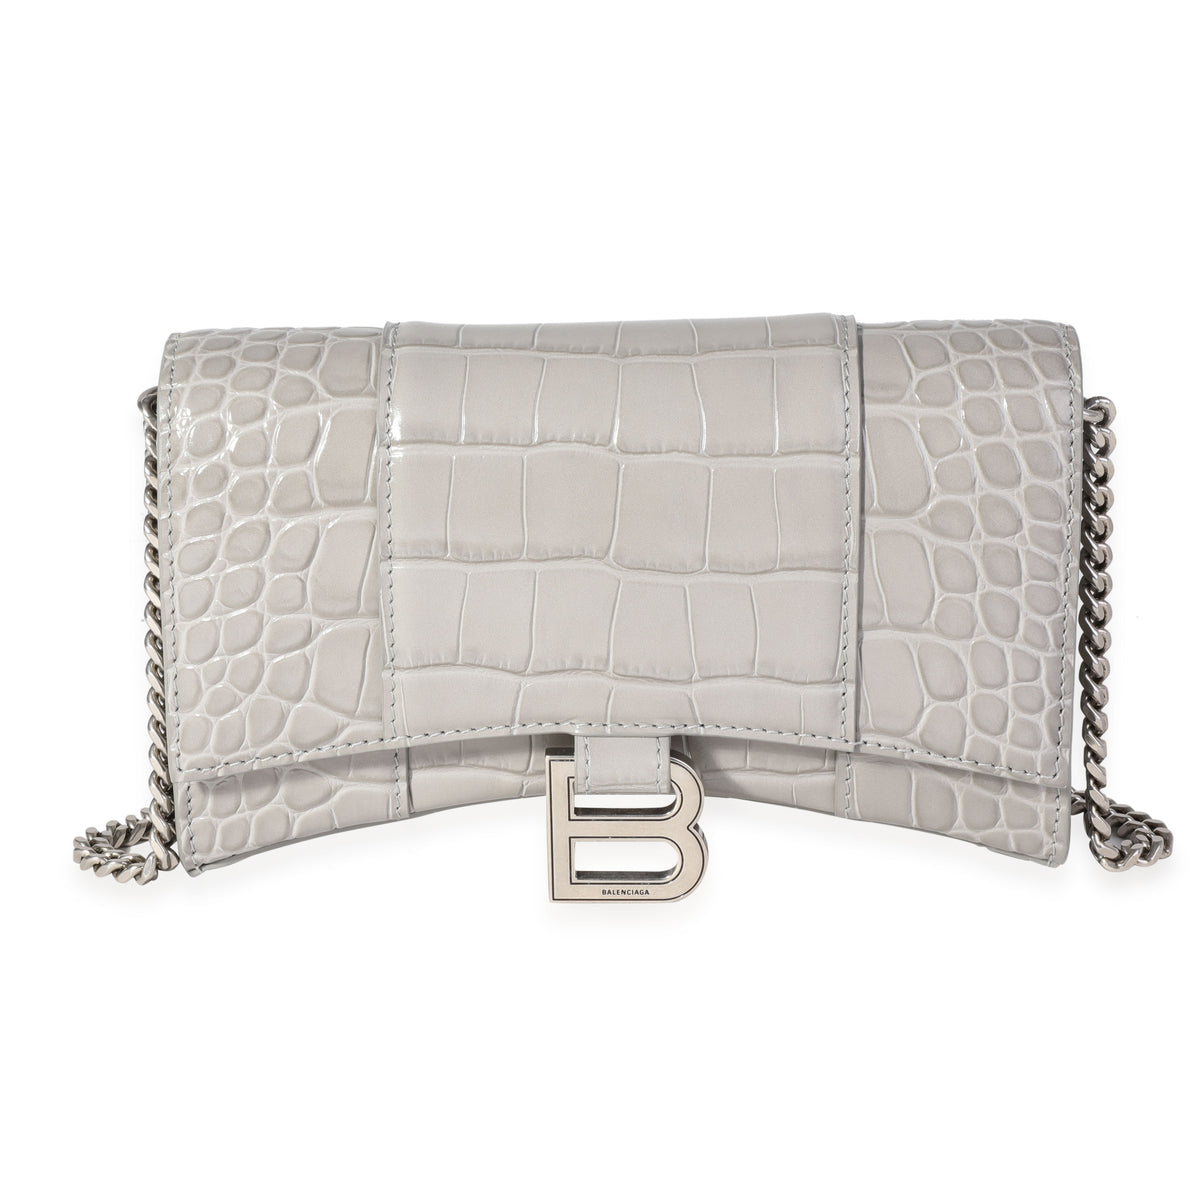 Balenciaga Grey Croc Hourglass Chain Wallet Bag Balenciaga